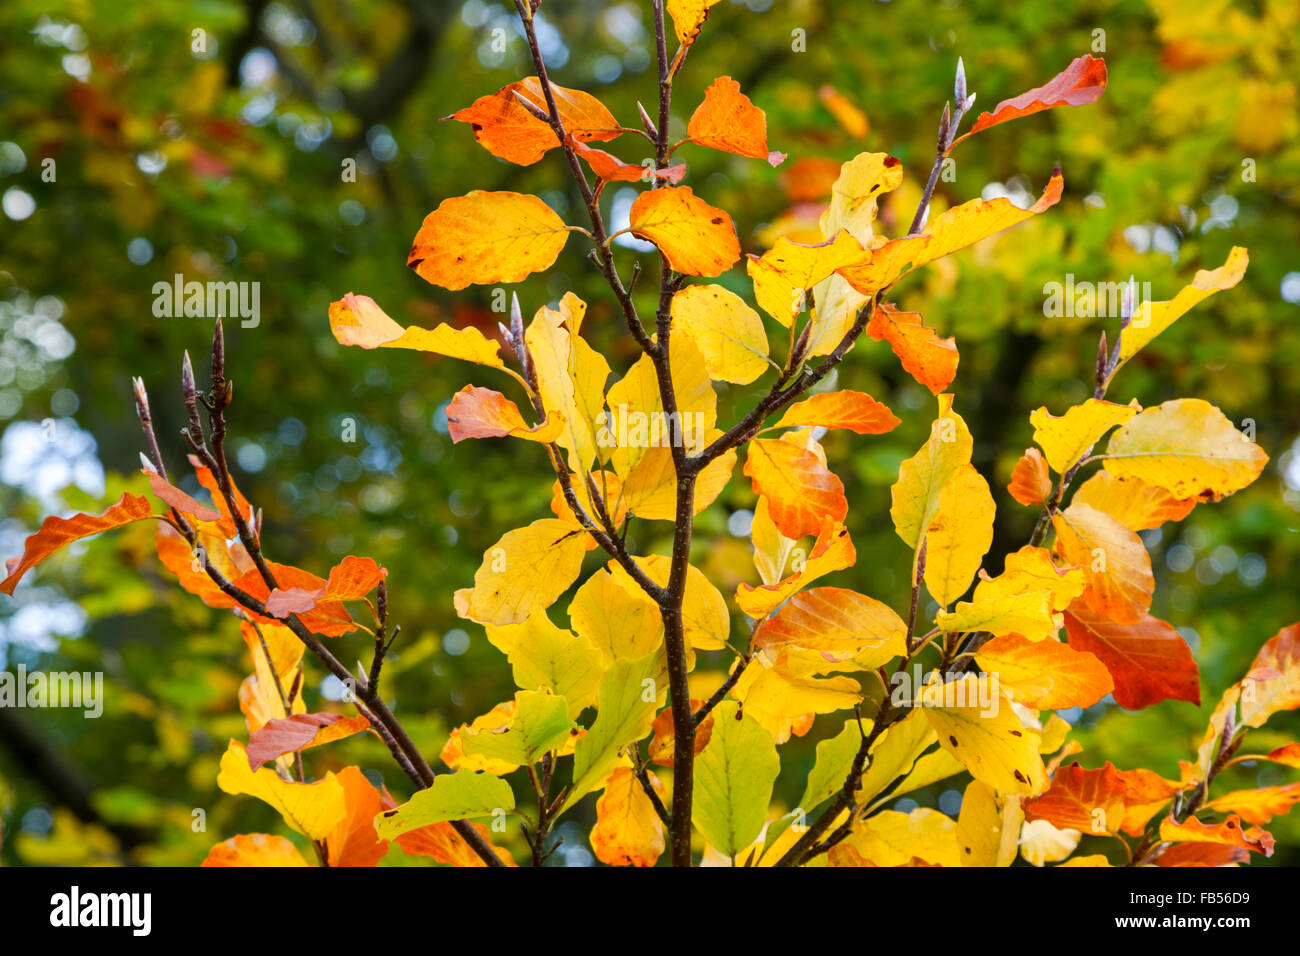 Feuilles de hêtre montrant les premiers signes de rouge, jaune, or et vert couleurs d'automne Banque D'Images